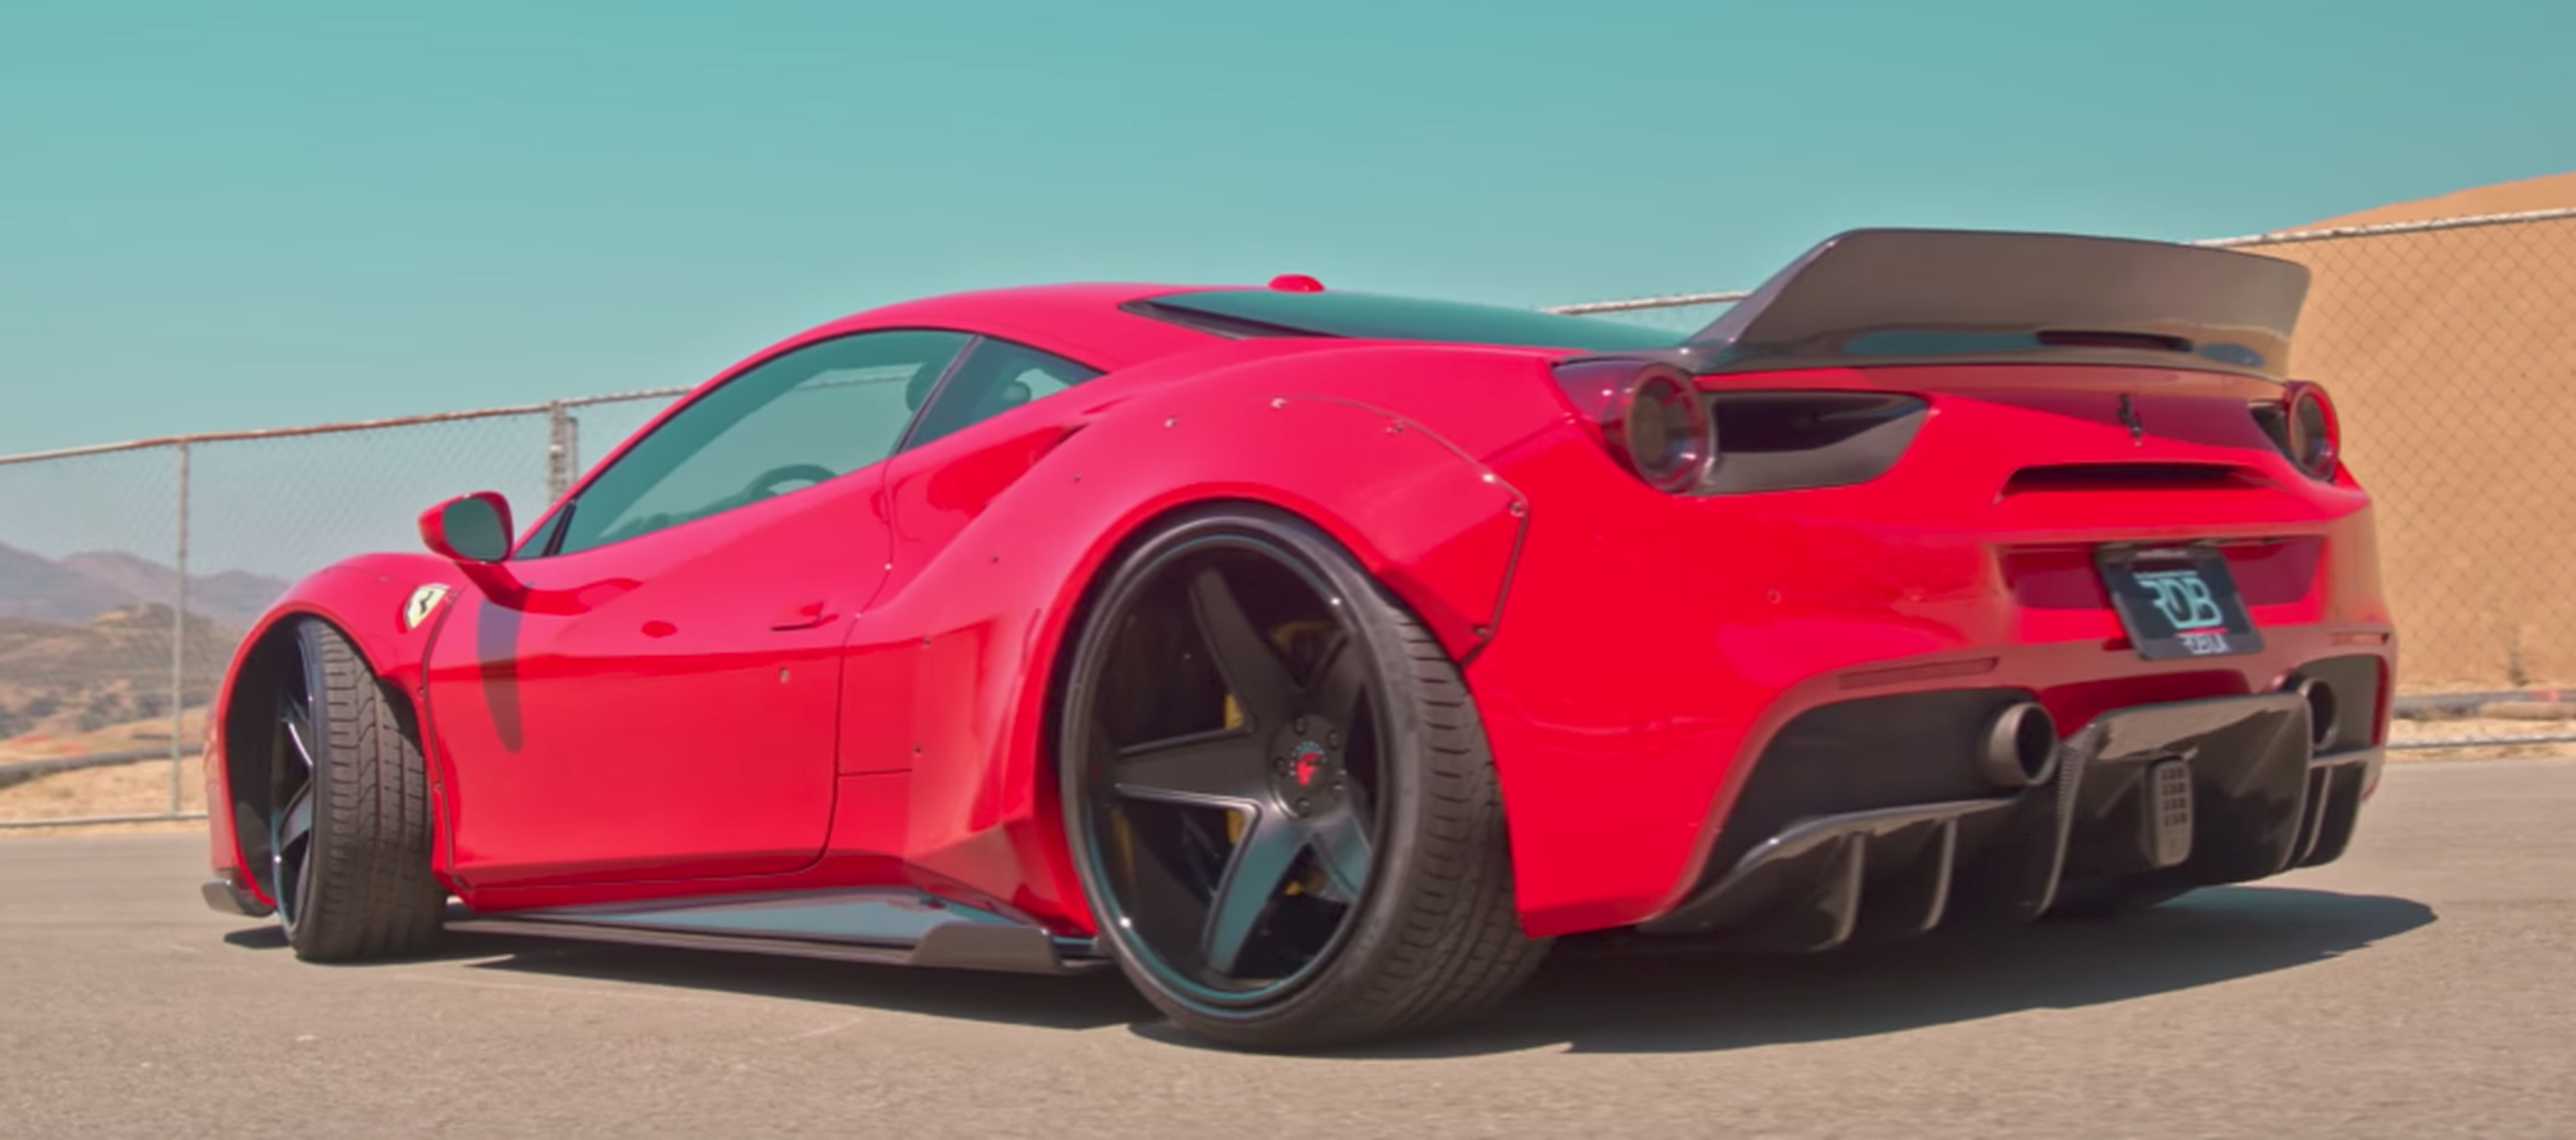 VÍDEO: ¡Forgiato power! Alucina con este Ferrari 488 con llantas negras